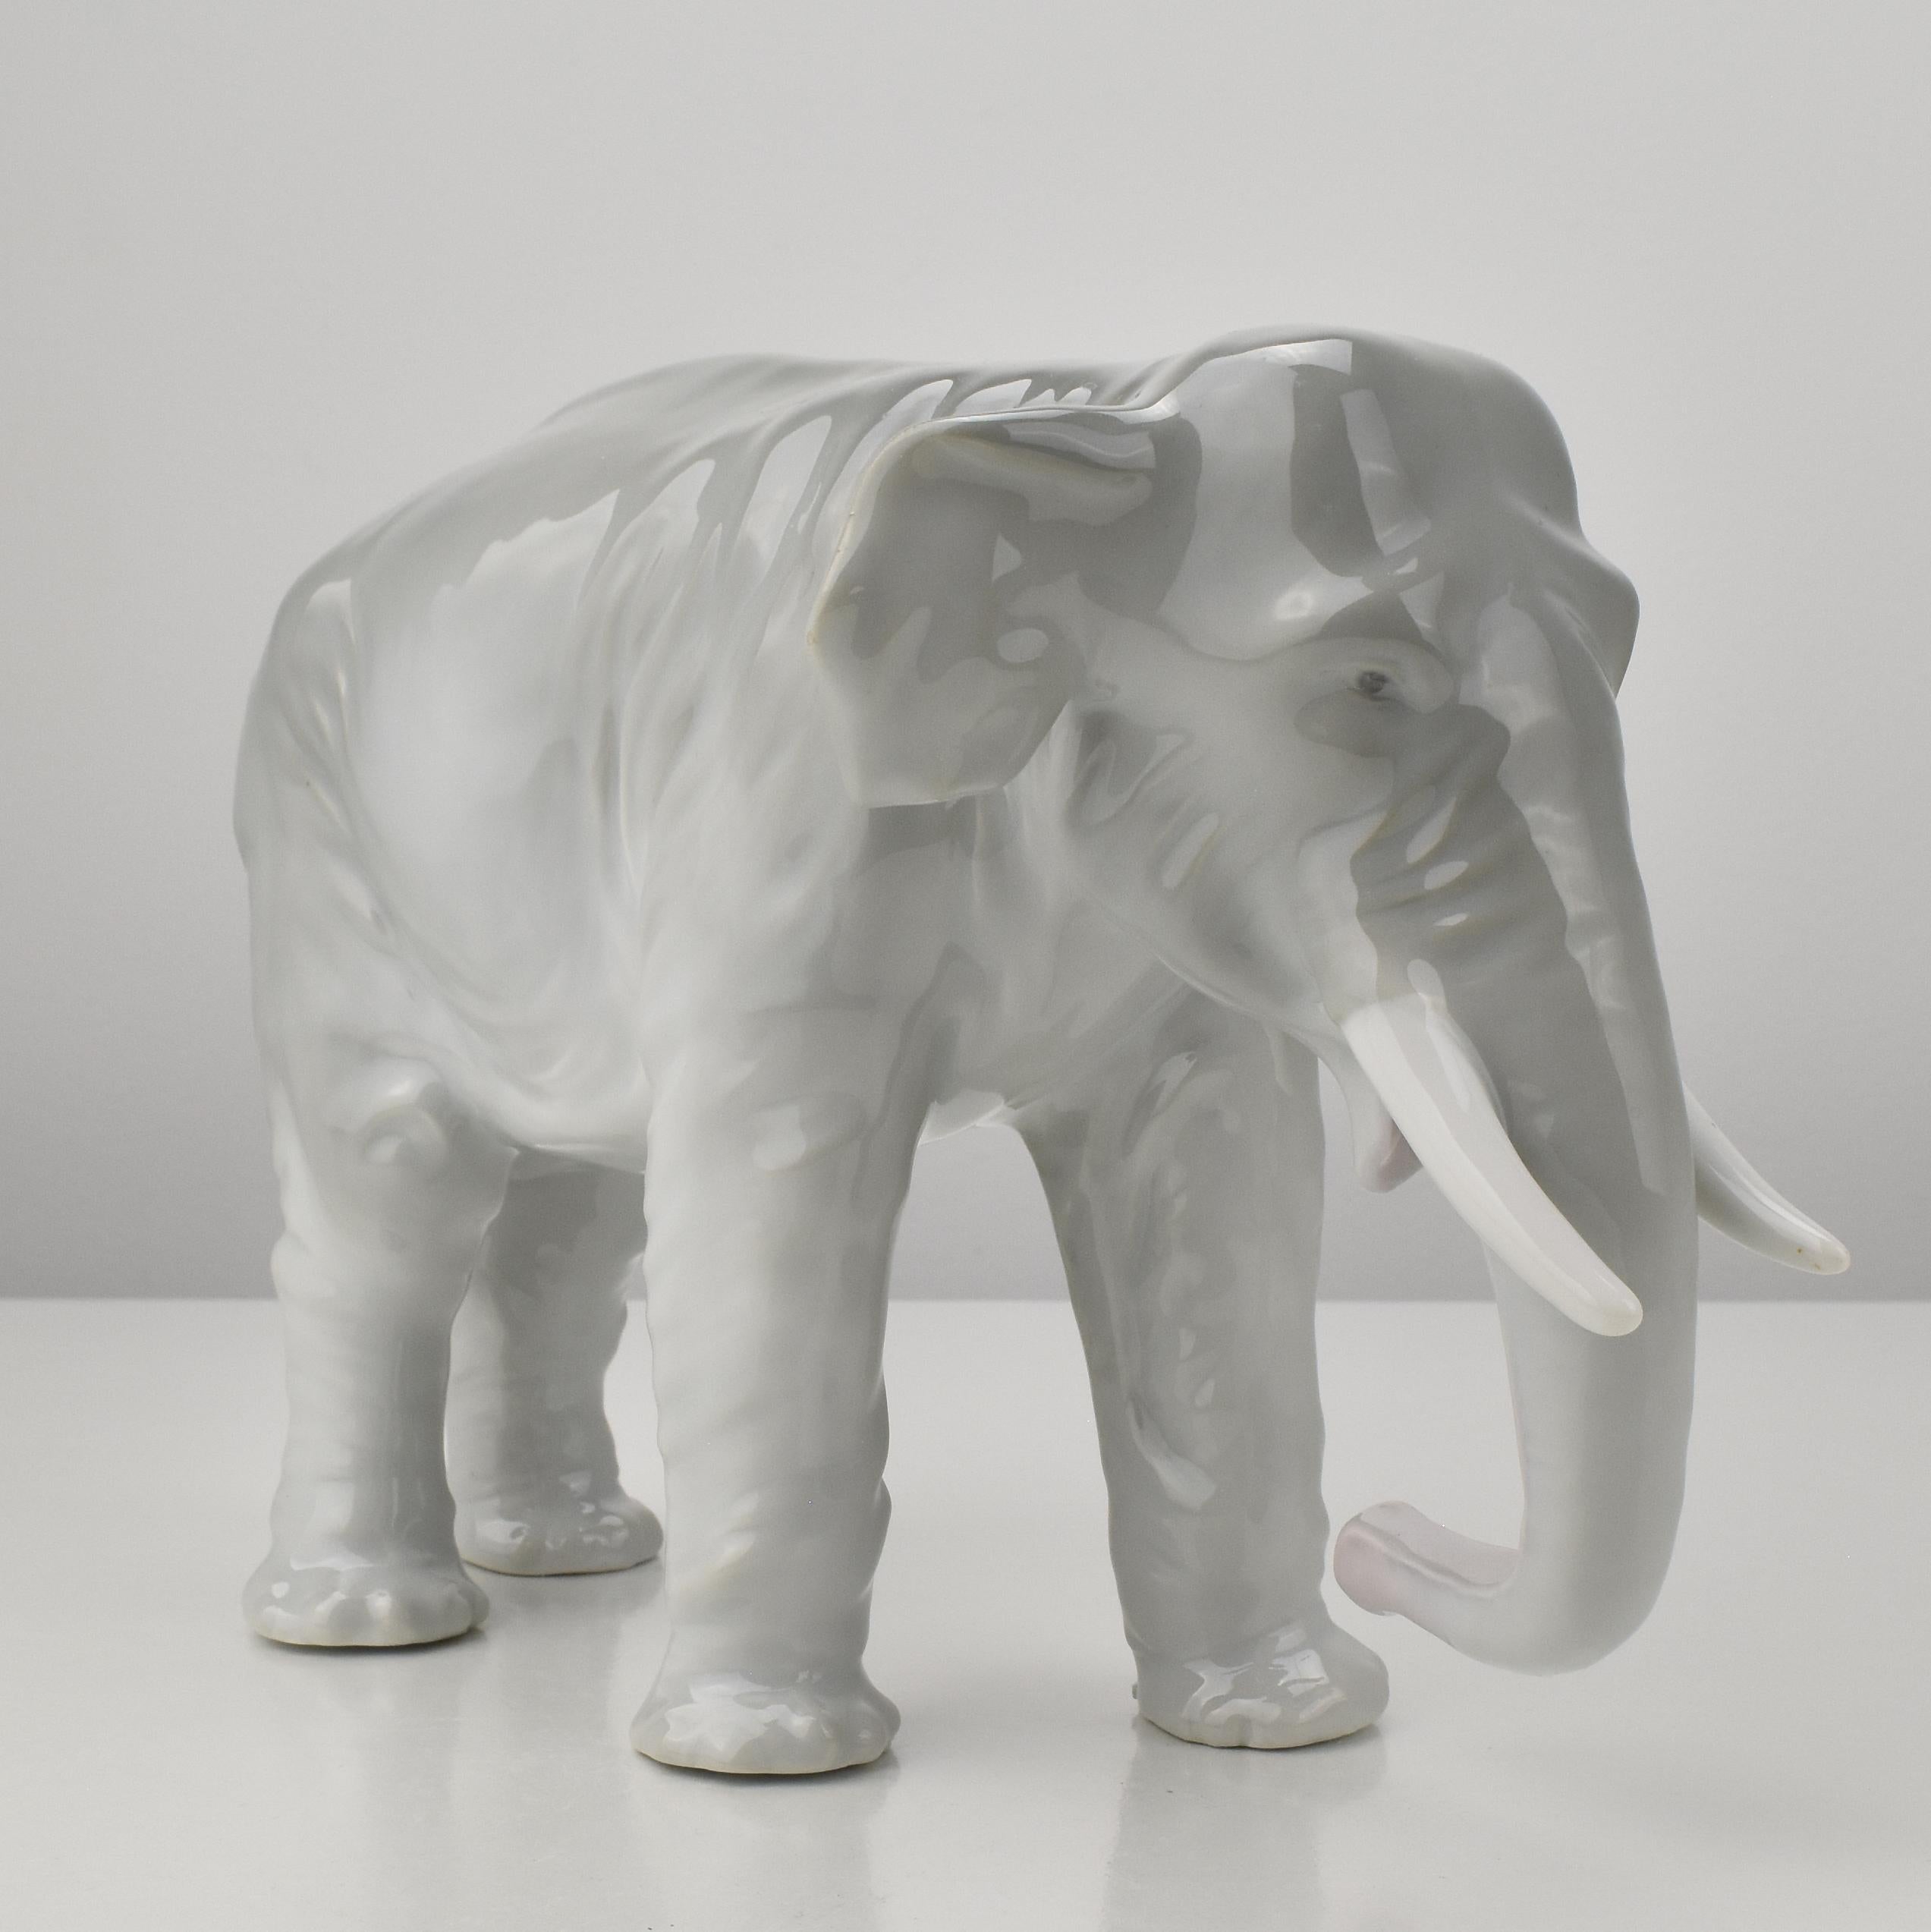 Eine naturalistisch geformte und fein detaillierte Elefantenfigur aus der Zeit des Jugendstils um 1910.
Der Elefant ist mit einer grünen, nicht näher bezeichneten Herstellermarke versehen.